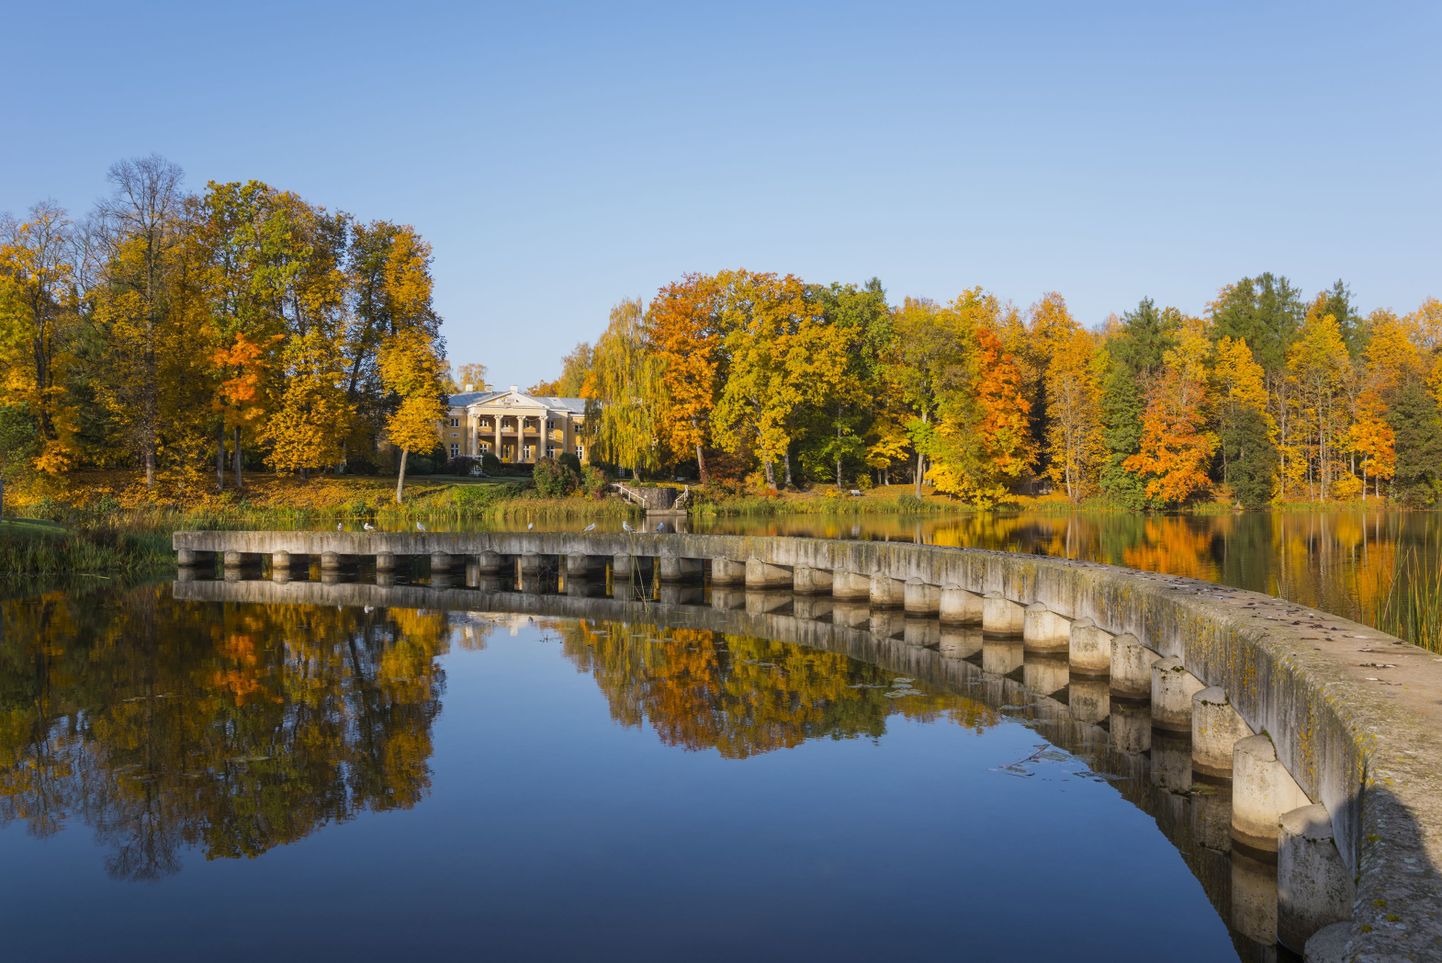 Sillapää lossi park asub looduslikul poolsaarel, mida ümbritseb poolkaarena järveks paisutatud Võhandu jõgi.